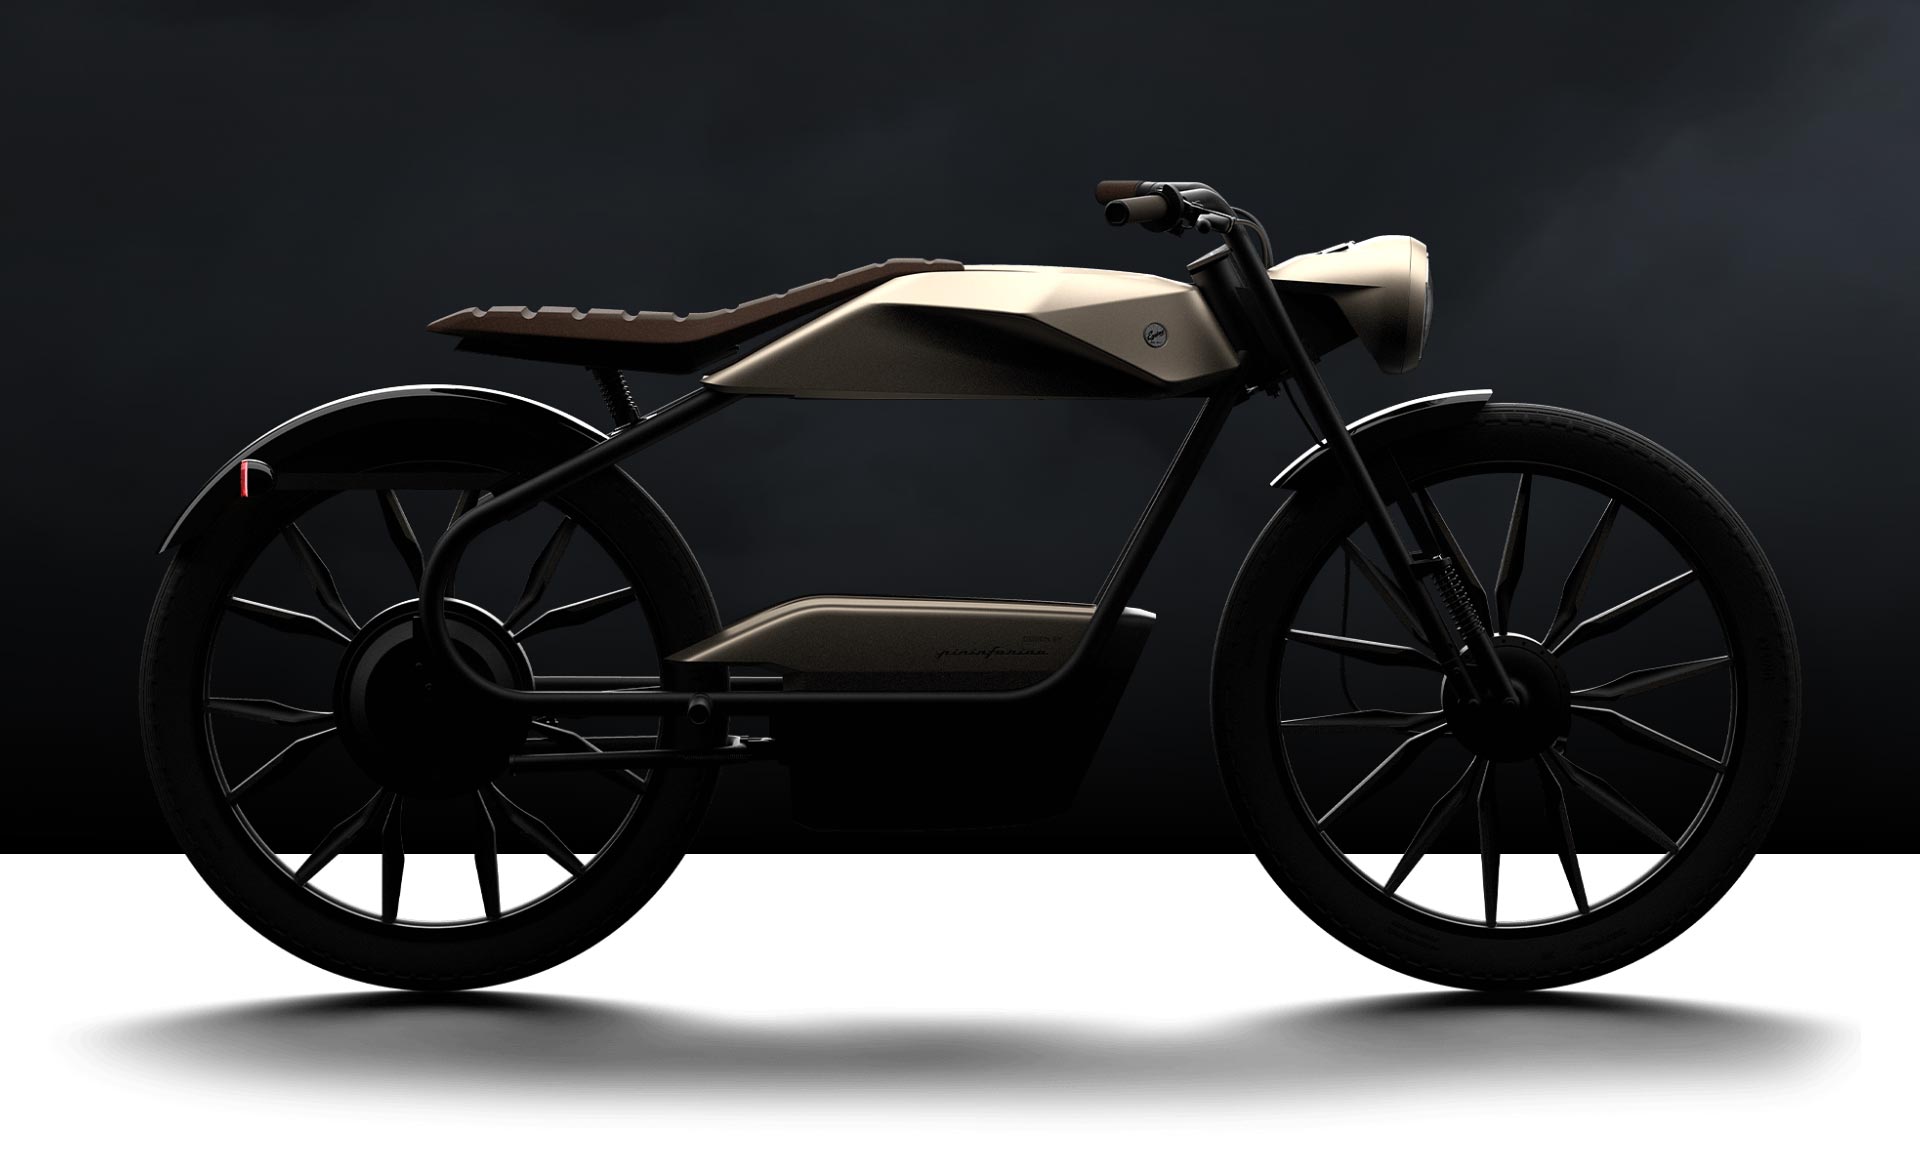 Pininfarina navrhla elektrický moped Eysing PF40 s futurističtějším designem a retro nádechem